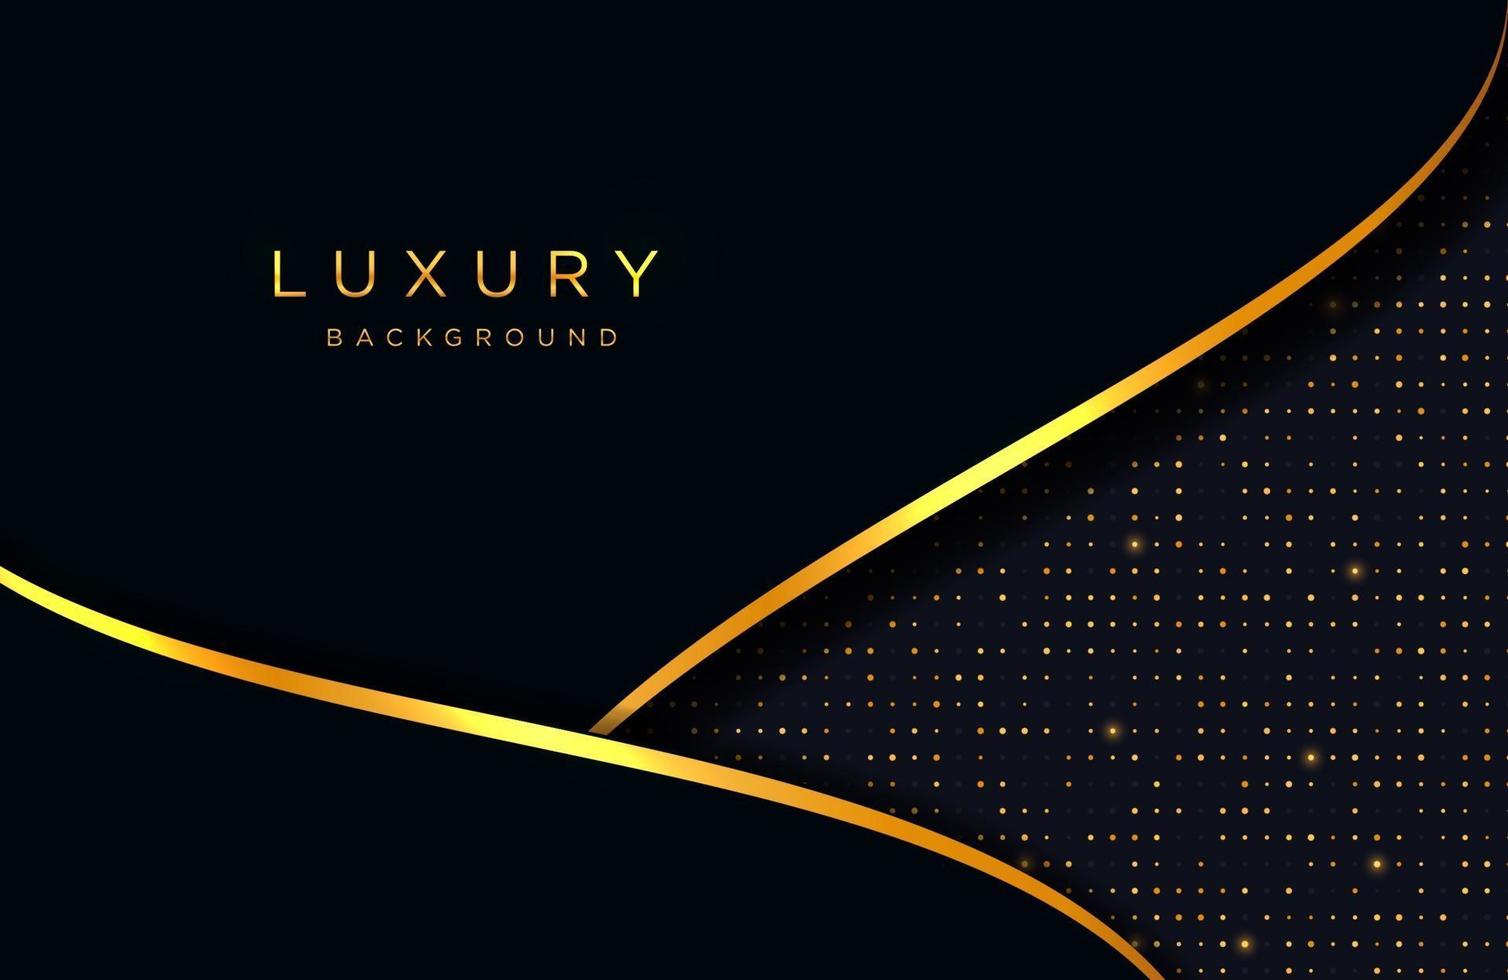 Fondo elegante de lujo con composición de líneas doradas. diseño de presentación de negocios vector